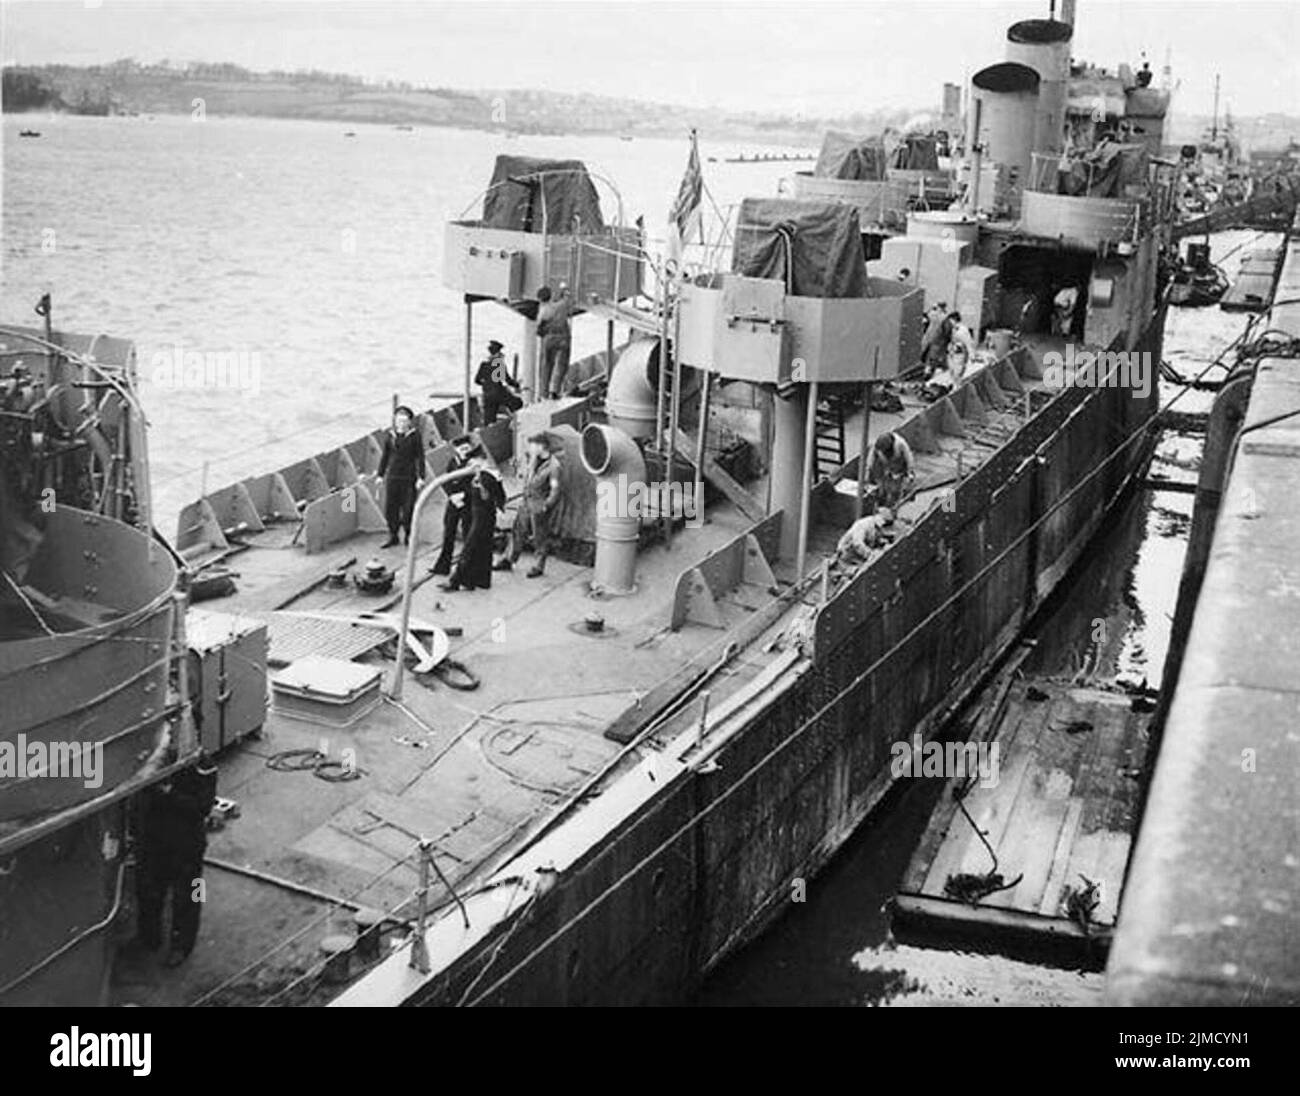 HMS Campbeltown en cours de conversion pour le raid. Il y a deux lignes de plaques de blindage de chaque côté du navire et les fixations Oerlikon. Deux de ses entonnoirs ont été retirés, les deux autres étant coupés en angle. Banque D'Images